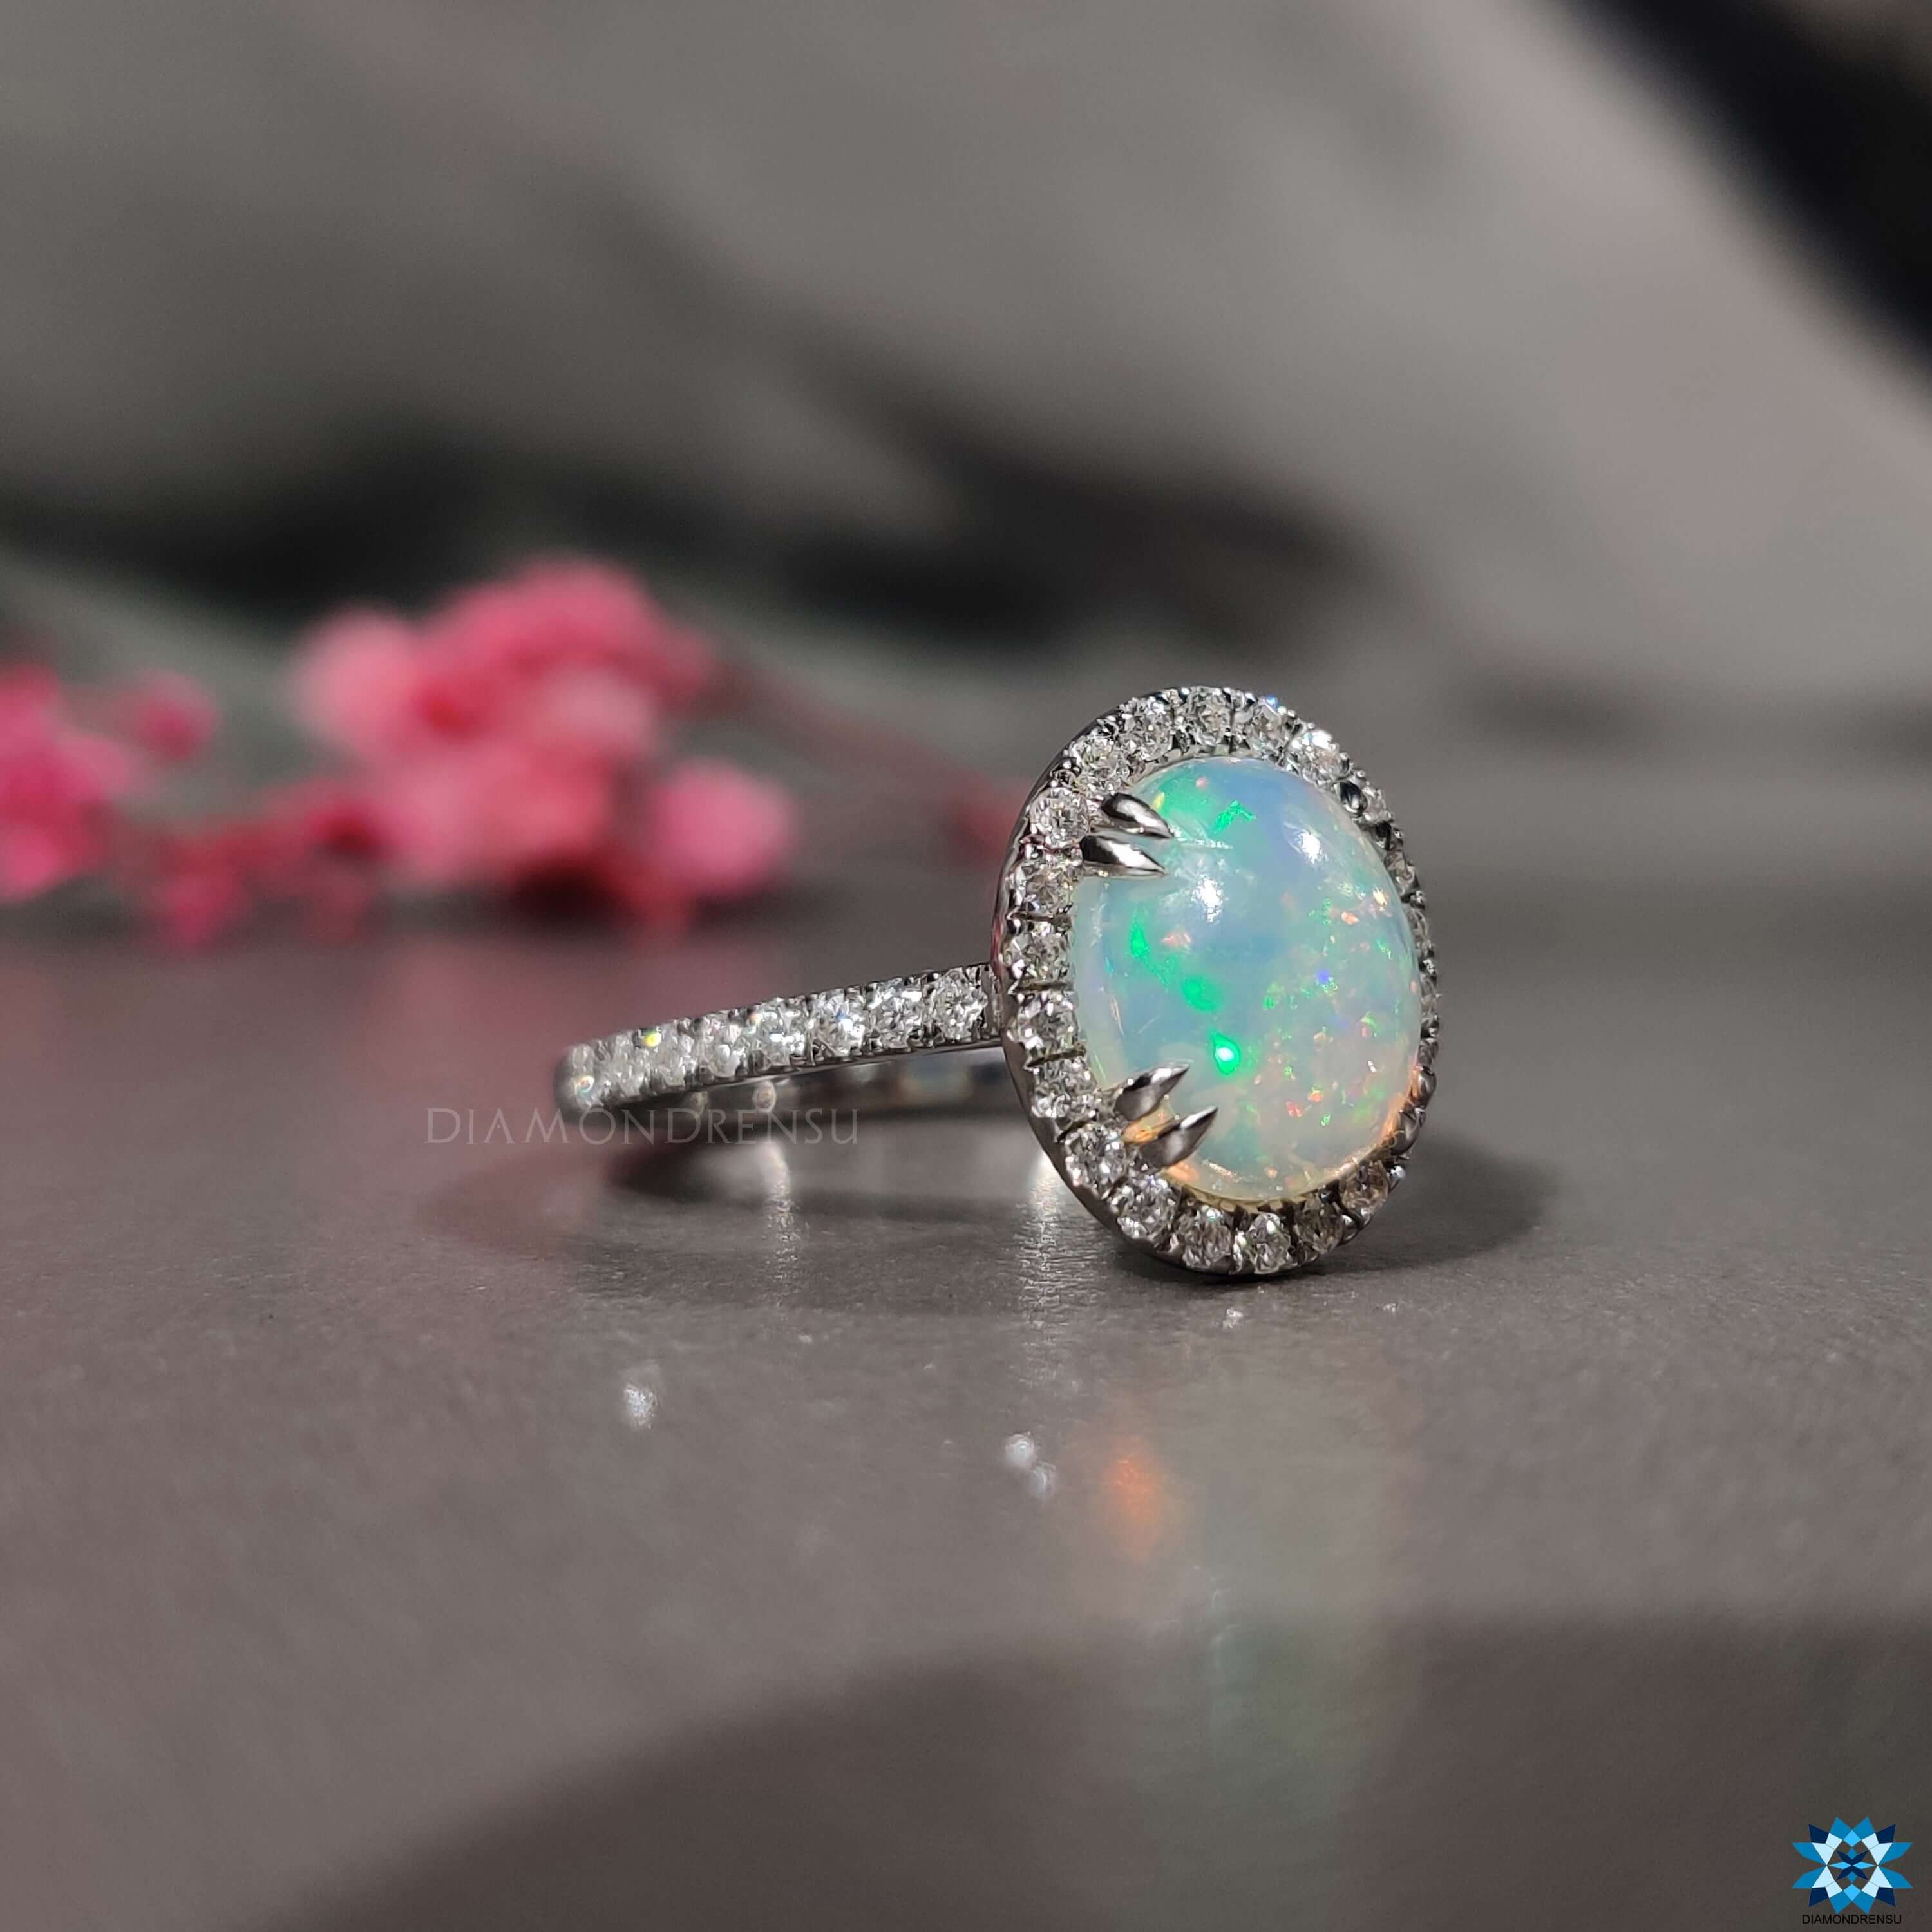 gemstone wedding ring - diamondrensu